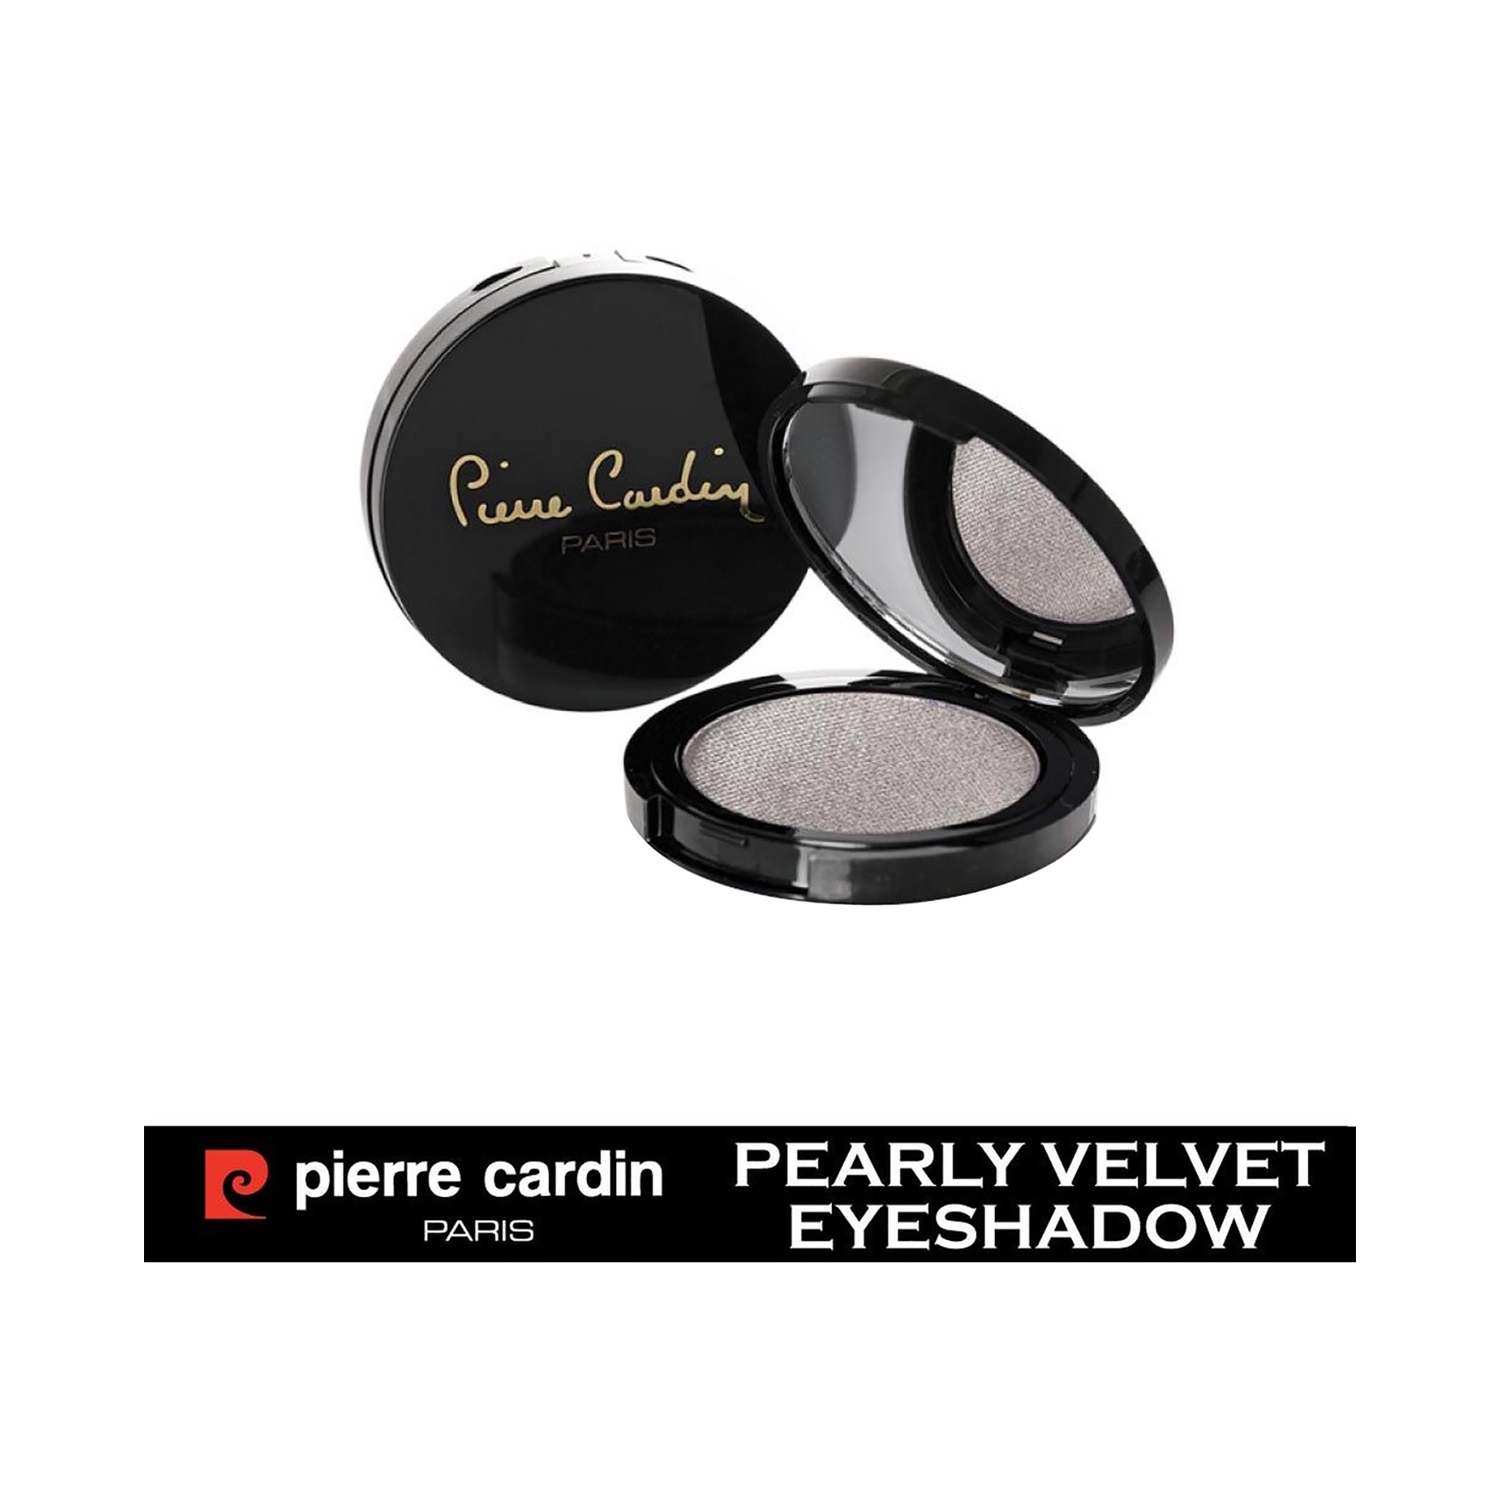 Pierre Cardin Paris | Pierre Cardin Paris Pearly Velvet Eye Shadow - 475 Moon Grey (4g)